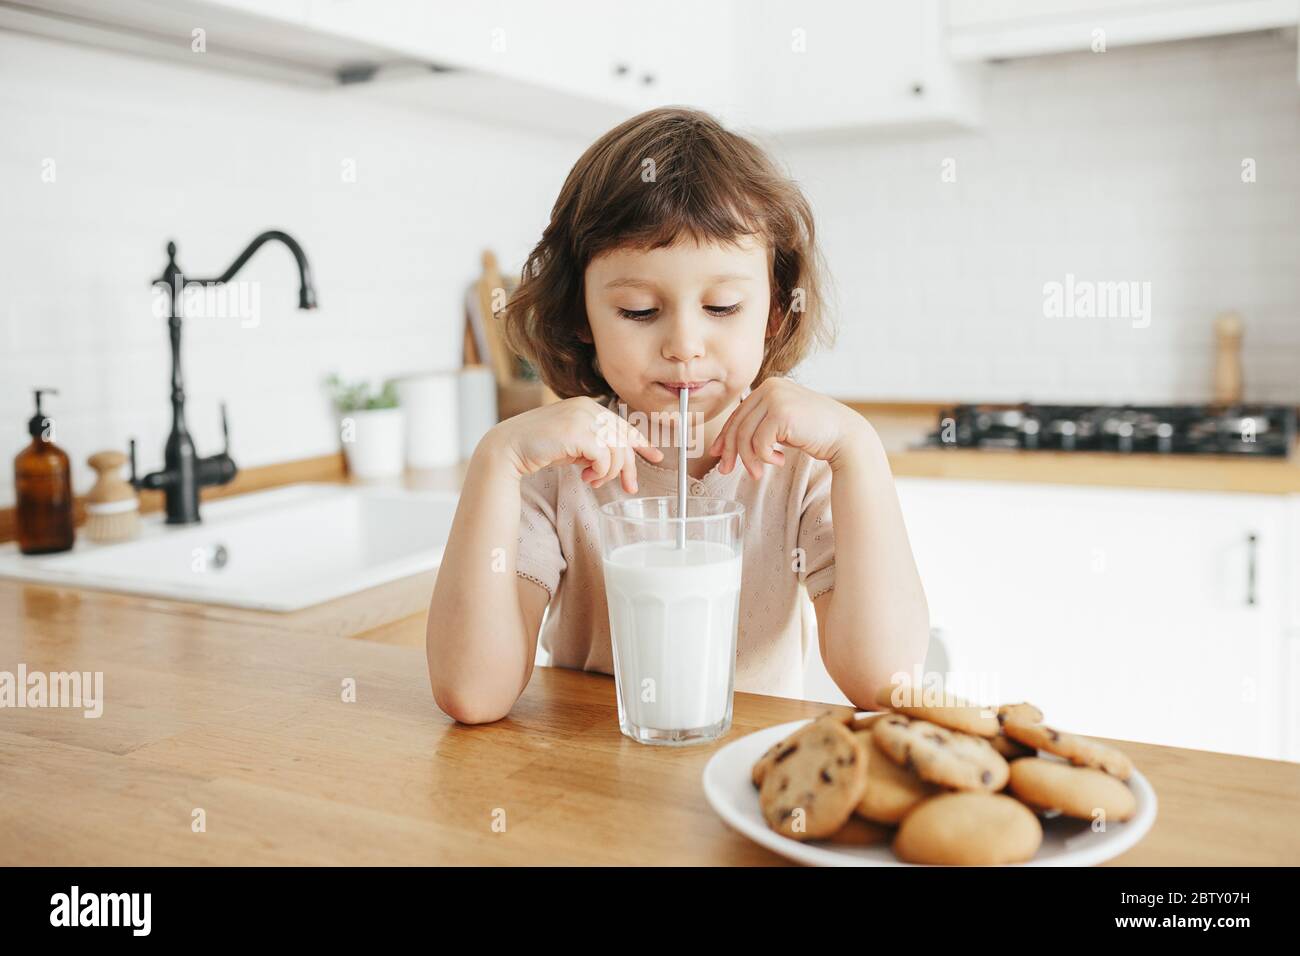 Une petite fille mignonne boit du lait avec de la paille d'acier en verre  et mange des biscuits assis à la table de la cuisine. Réduire l'utilisation  de plastique chez les enfants